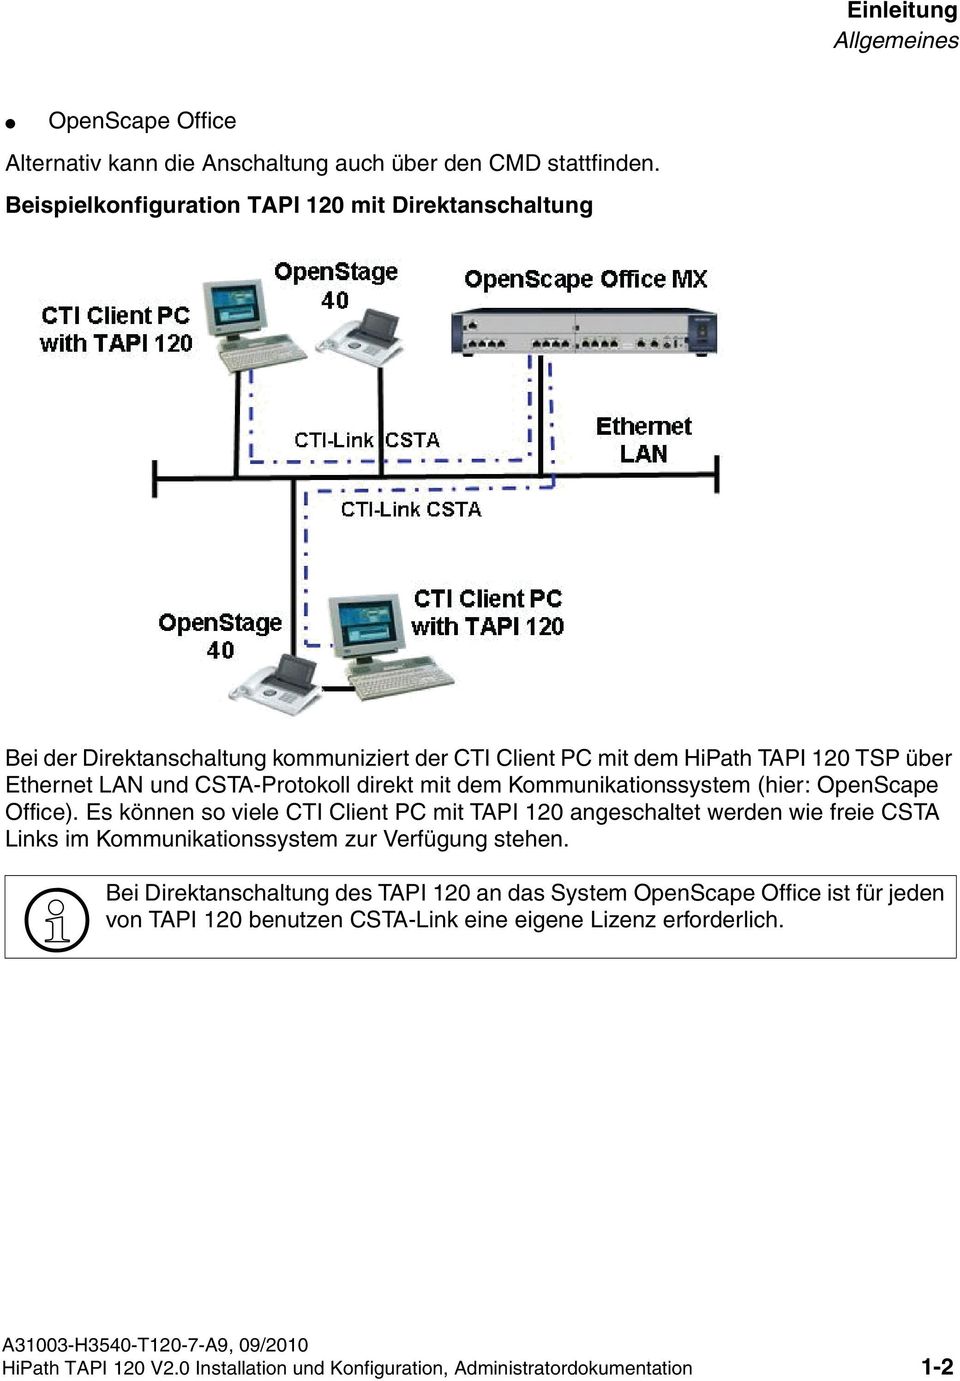 dem Kommunikationssystem (hier: OpenScape Office). Es können so viele CTI Client PC mit TAPI 120 angeschaltet werden wie freie CSTA Links im Kommunikationssystem zur Verfügung stehen.